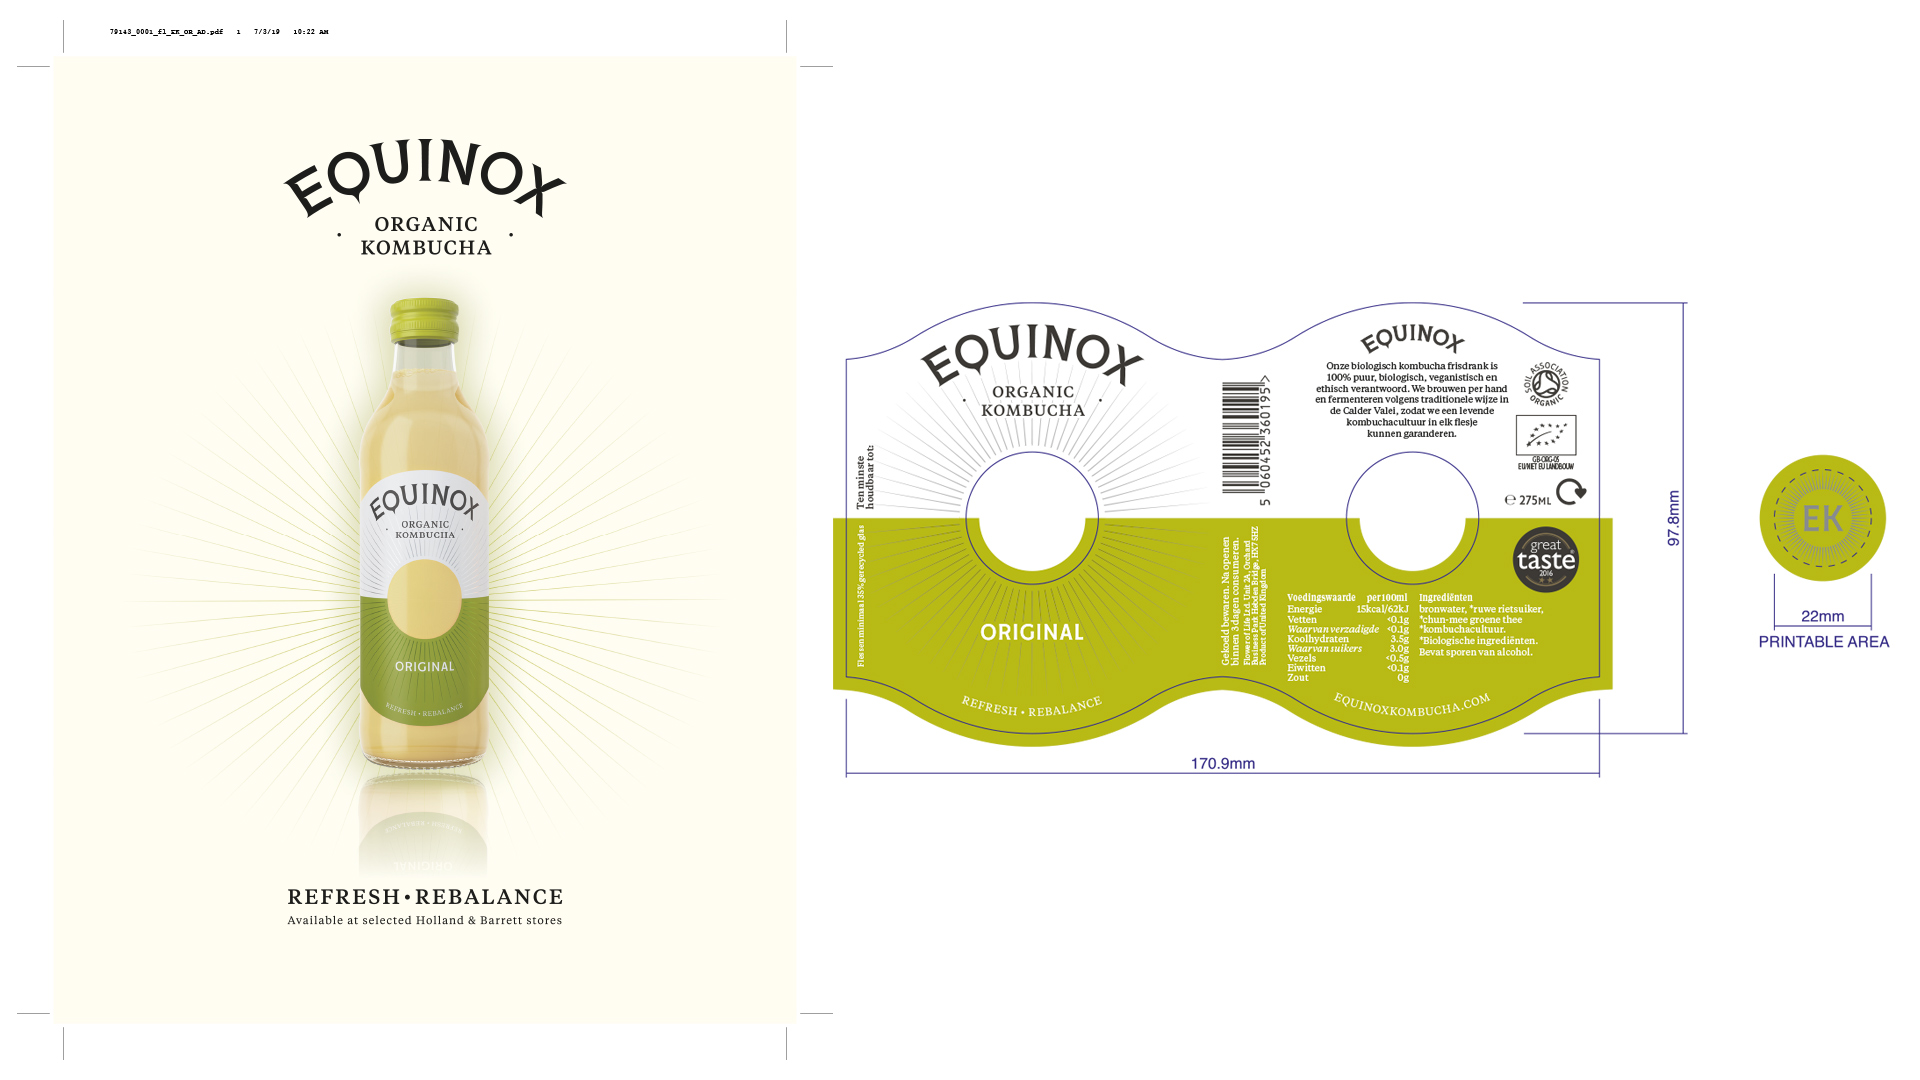 Equinox-bottle-artwork-packaging-food-repro